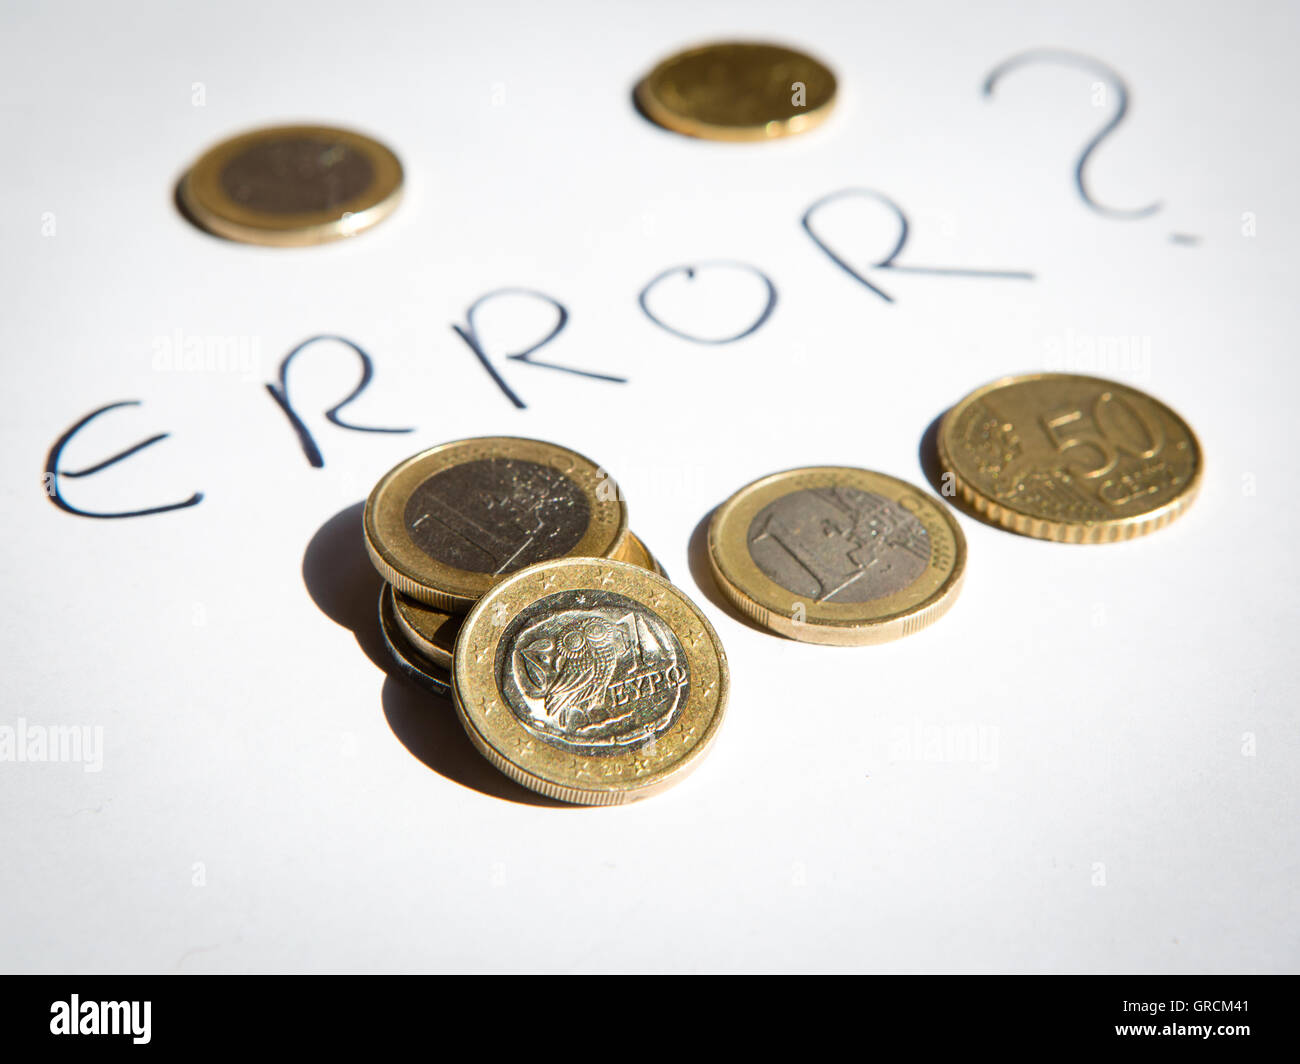 Las monedas de euro griegas Grecia ue cuestionable Foto de stock